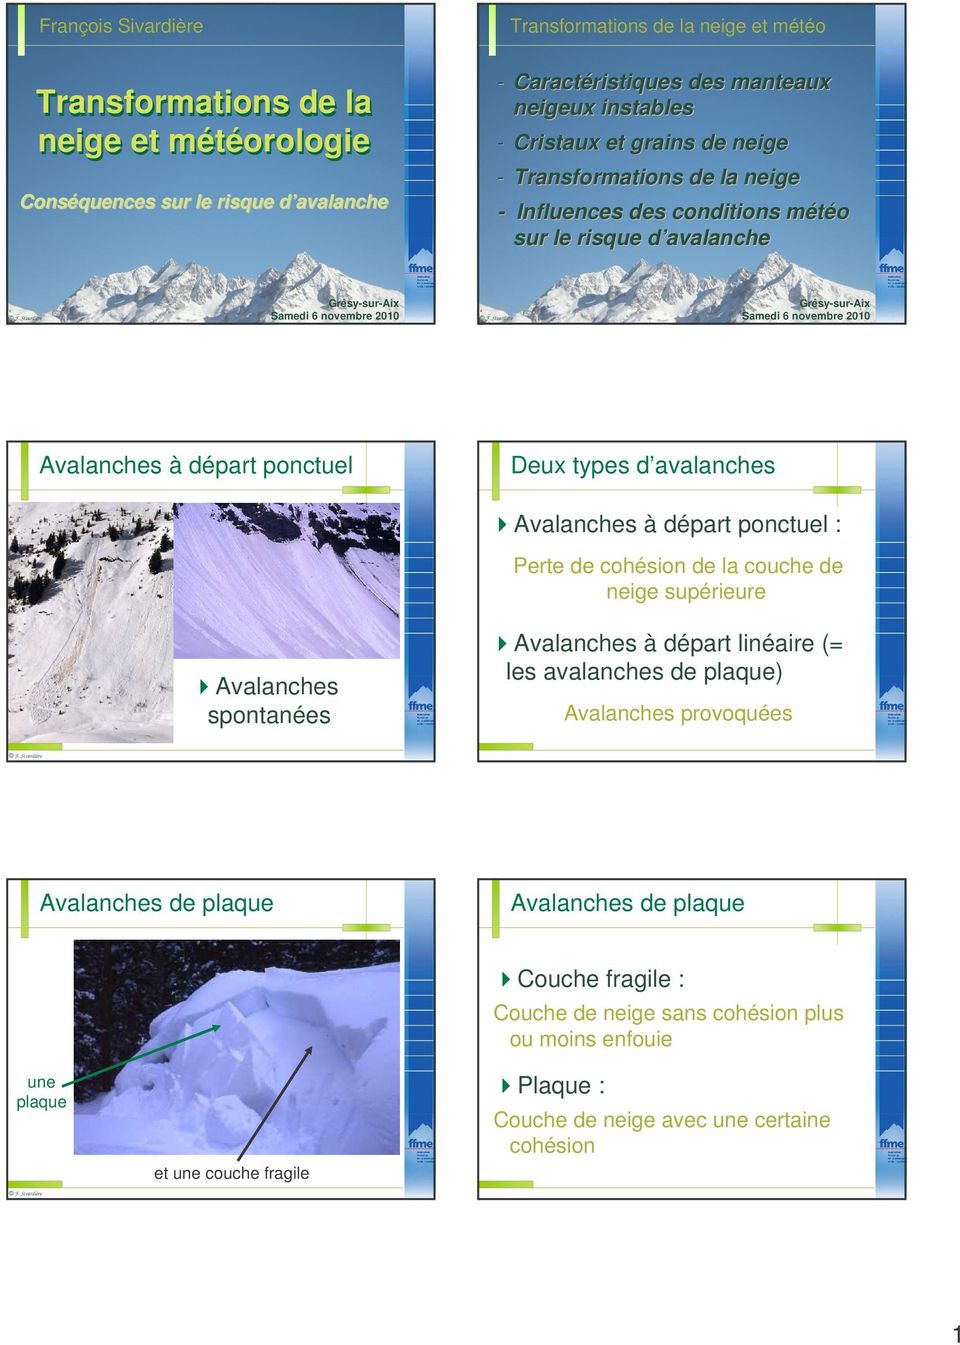 6 novembre 2010 Deux types d avalanches Avalanches à départ ponctuel : de la couche de neige supérieure Avalanches spontanées Avalanches à départ linéaire (= les avalanches de plaque) Avalanches